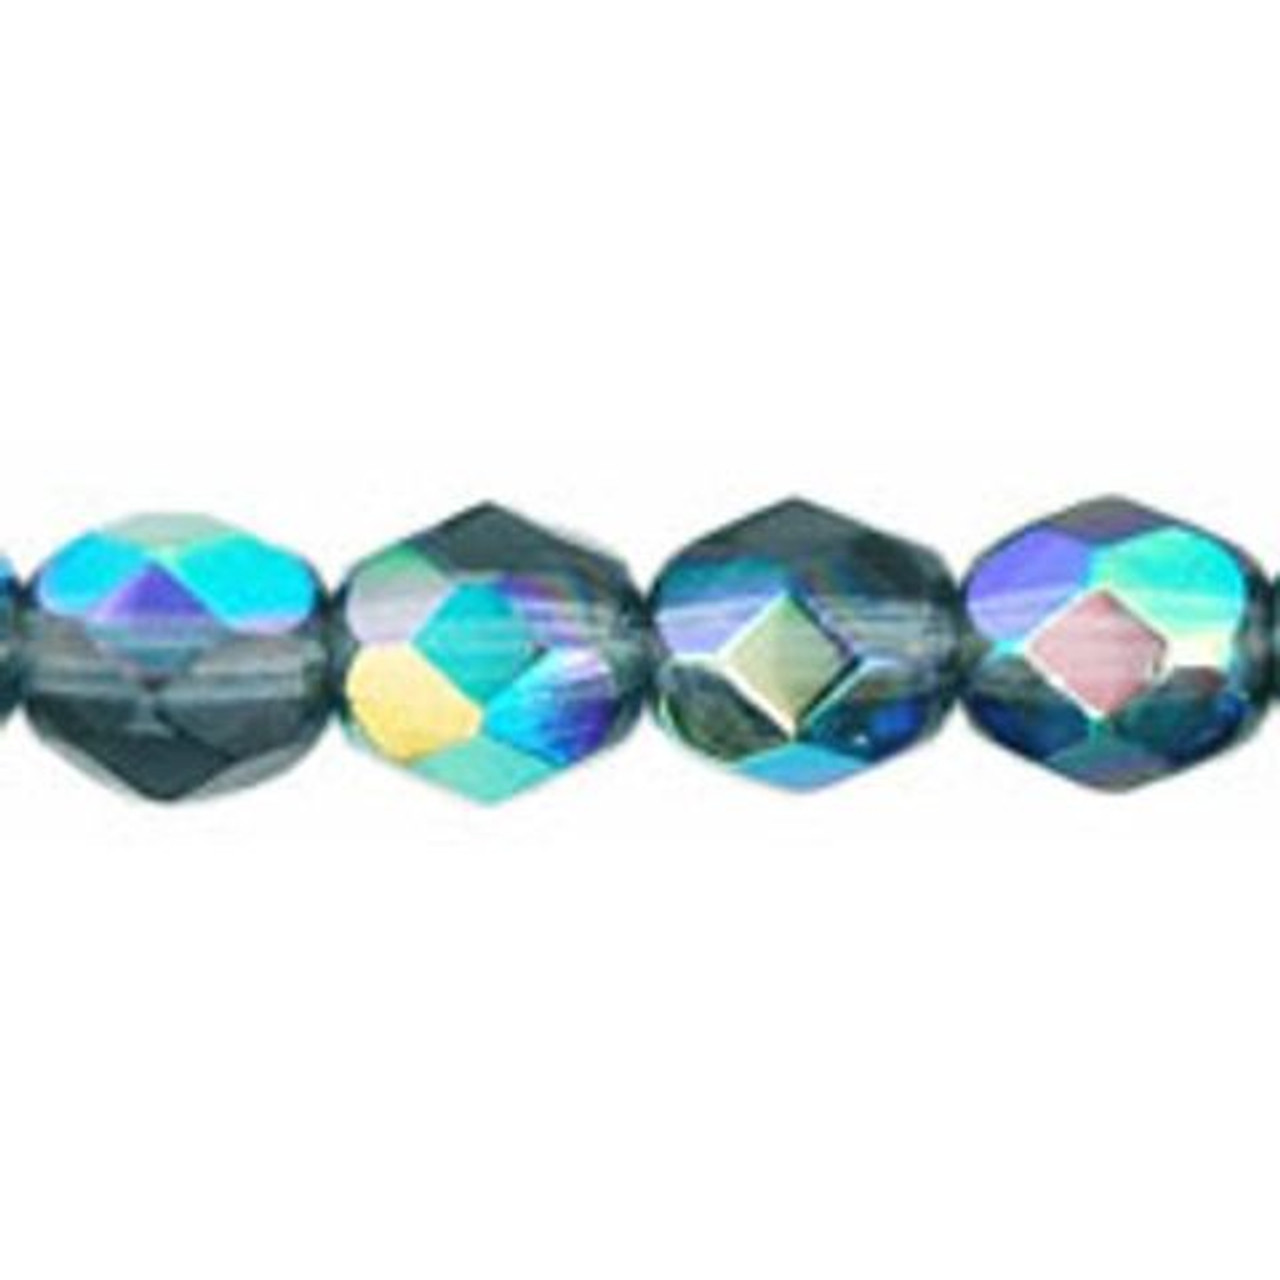 Firepolish 6mm Czech Glass Beads GREEN BLUE